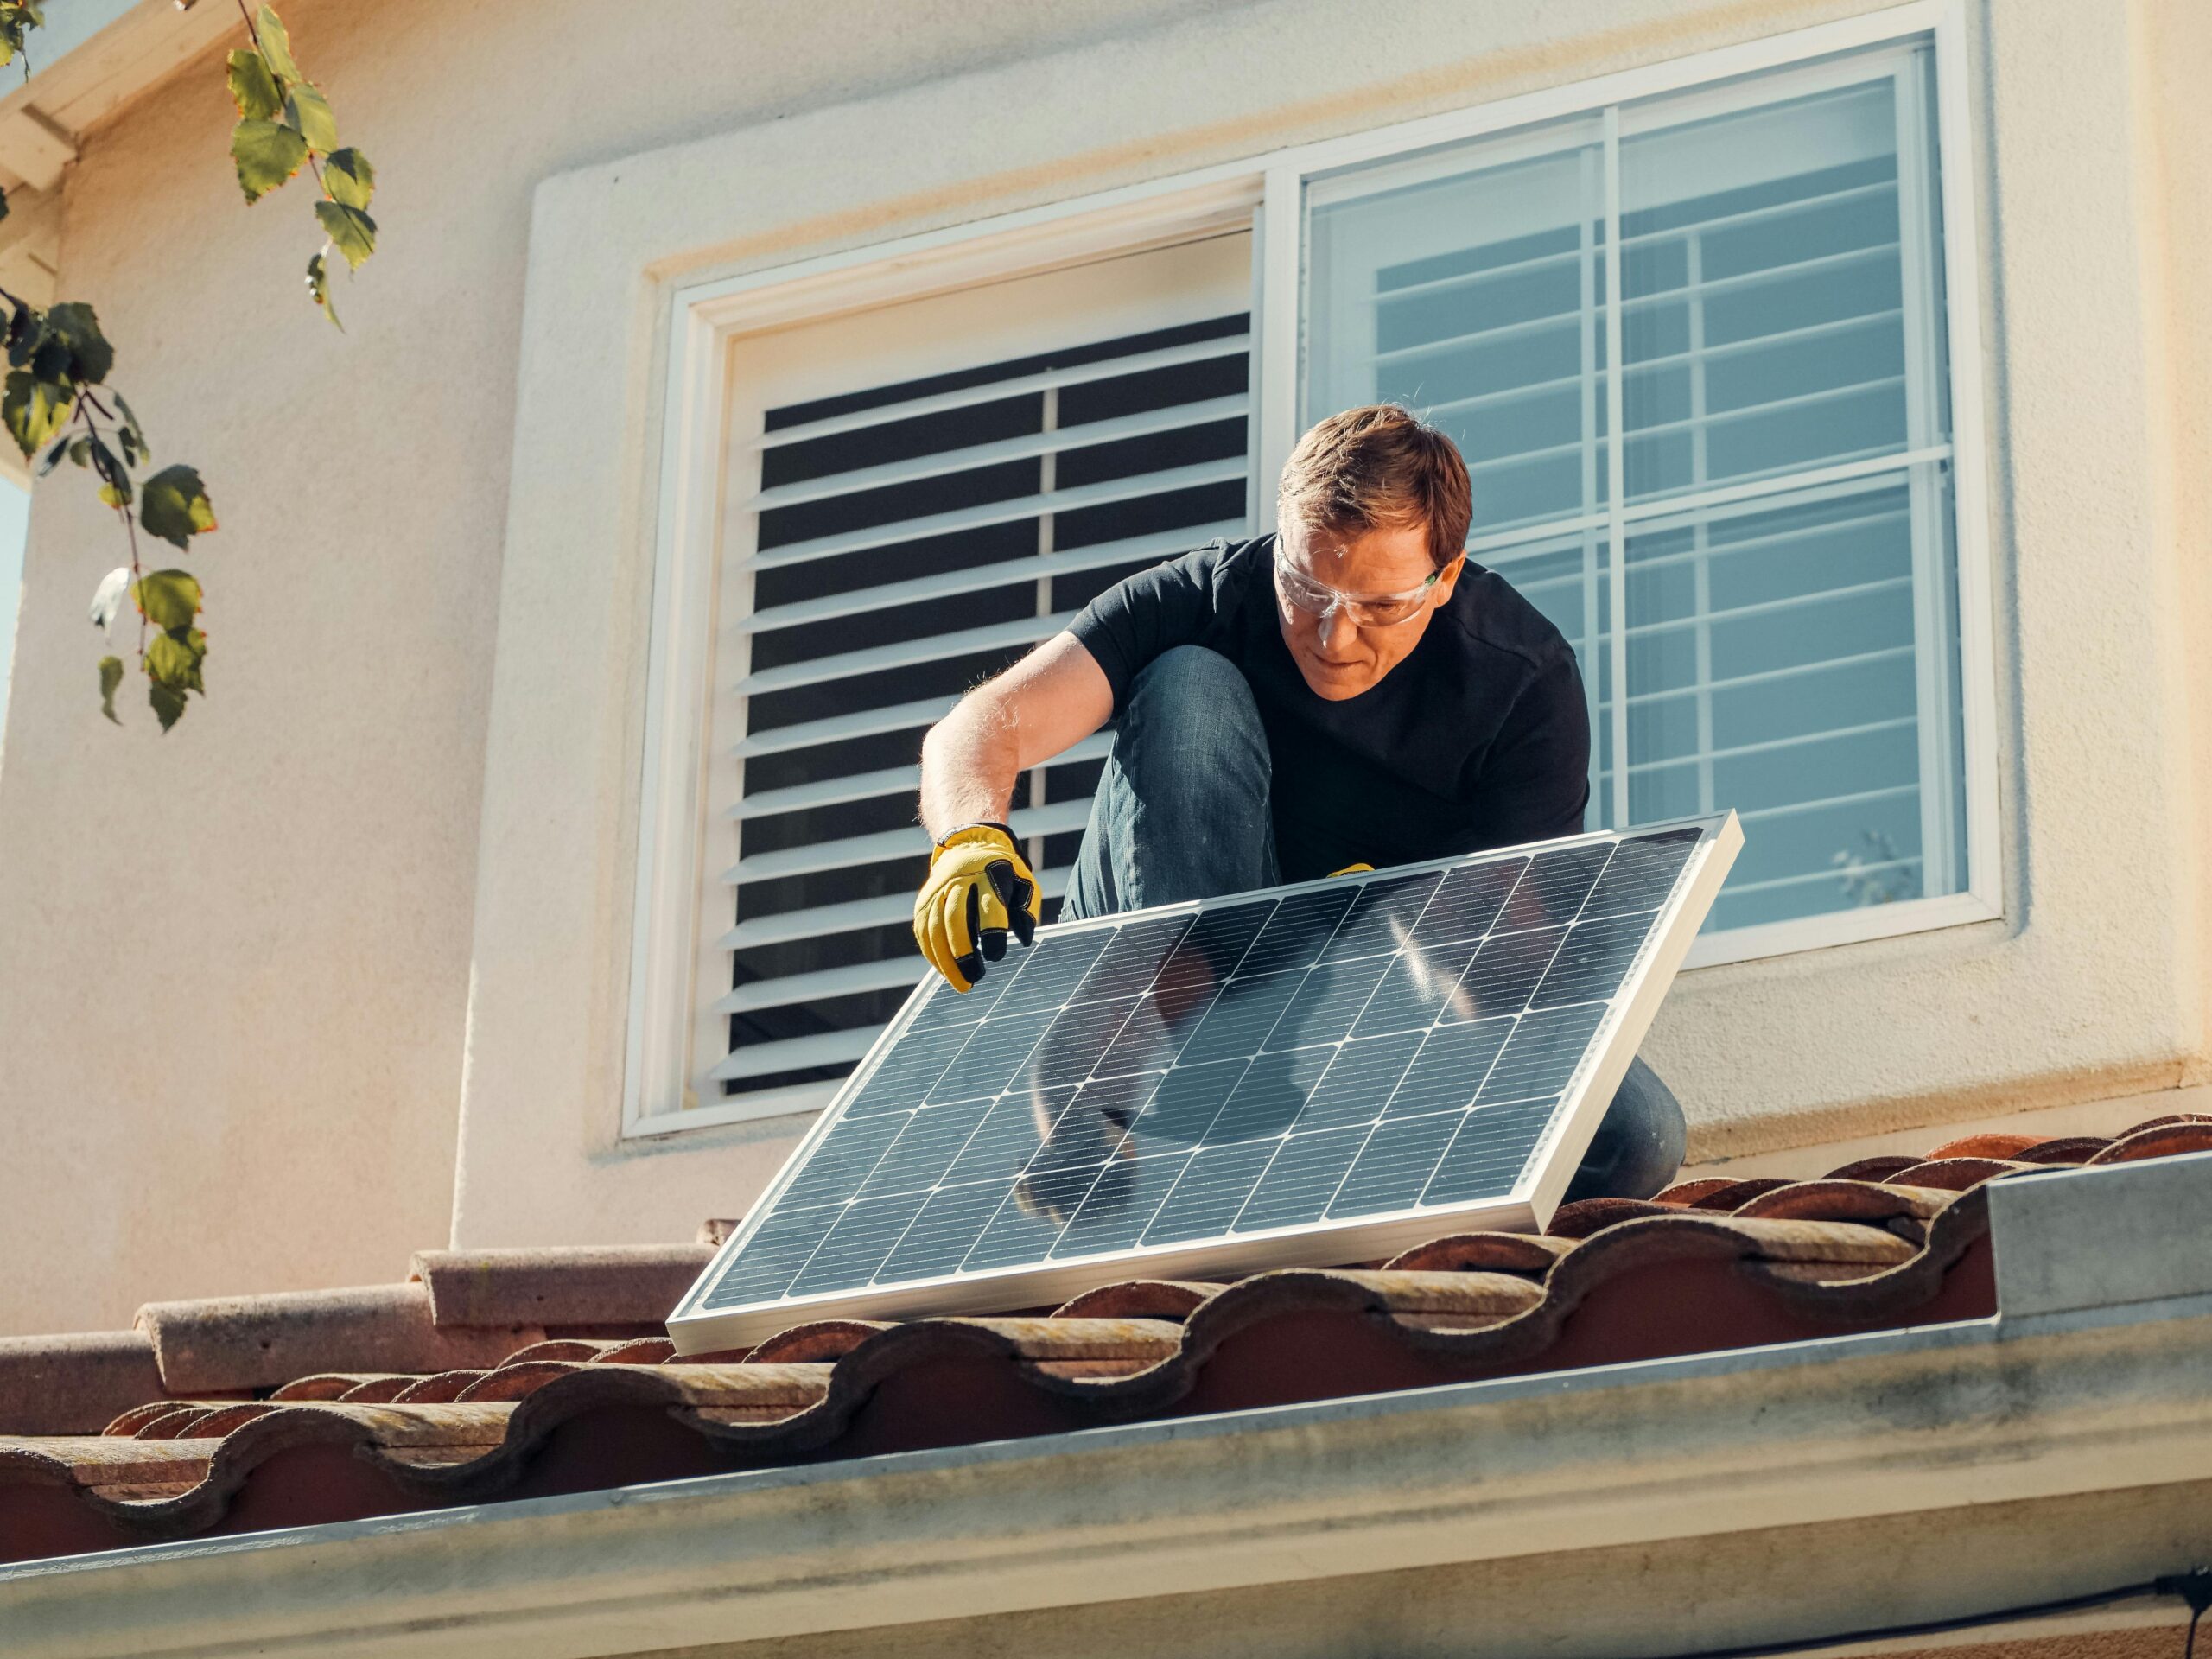 Mann installiert Photovoltaik auf einem Dach